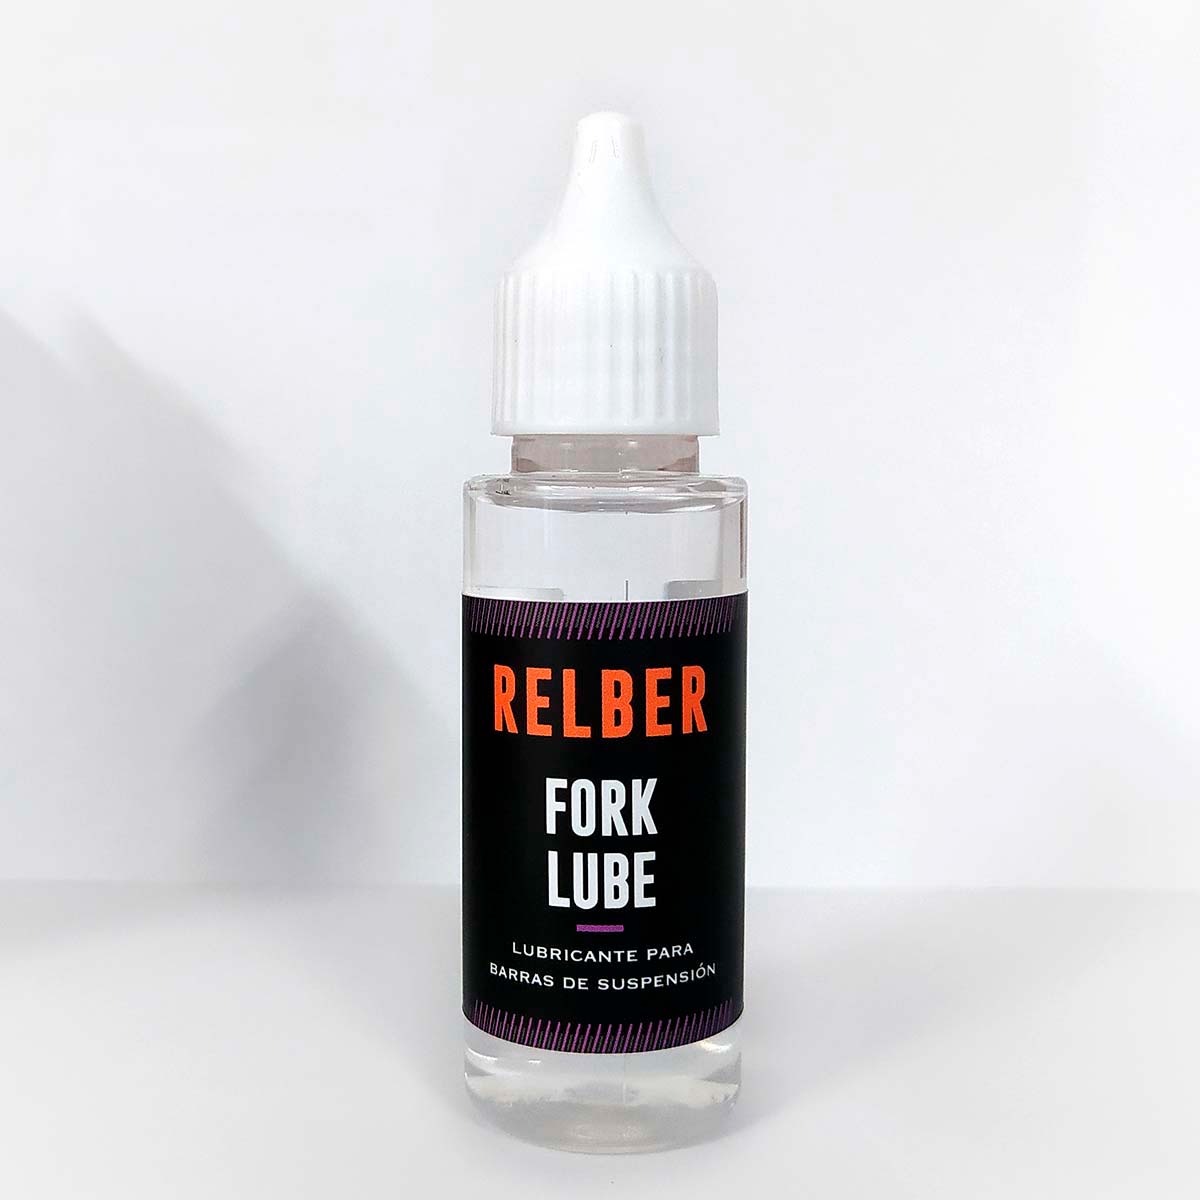 En TodoMountainBike: Relber presenta el Fork Lube, un lubricante específico para suspensiones y tijas telescópicas